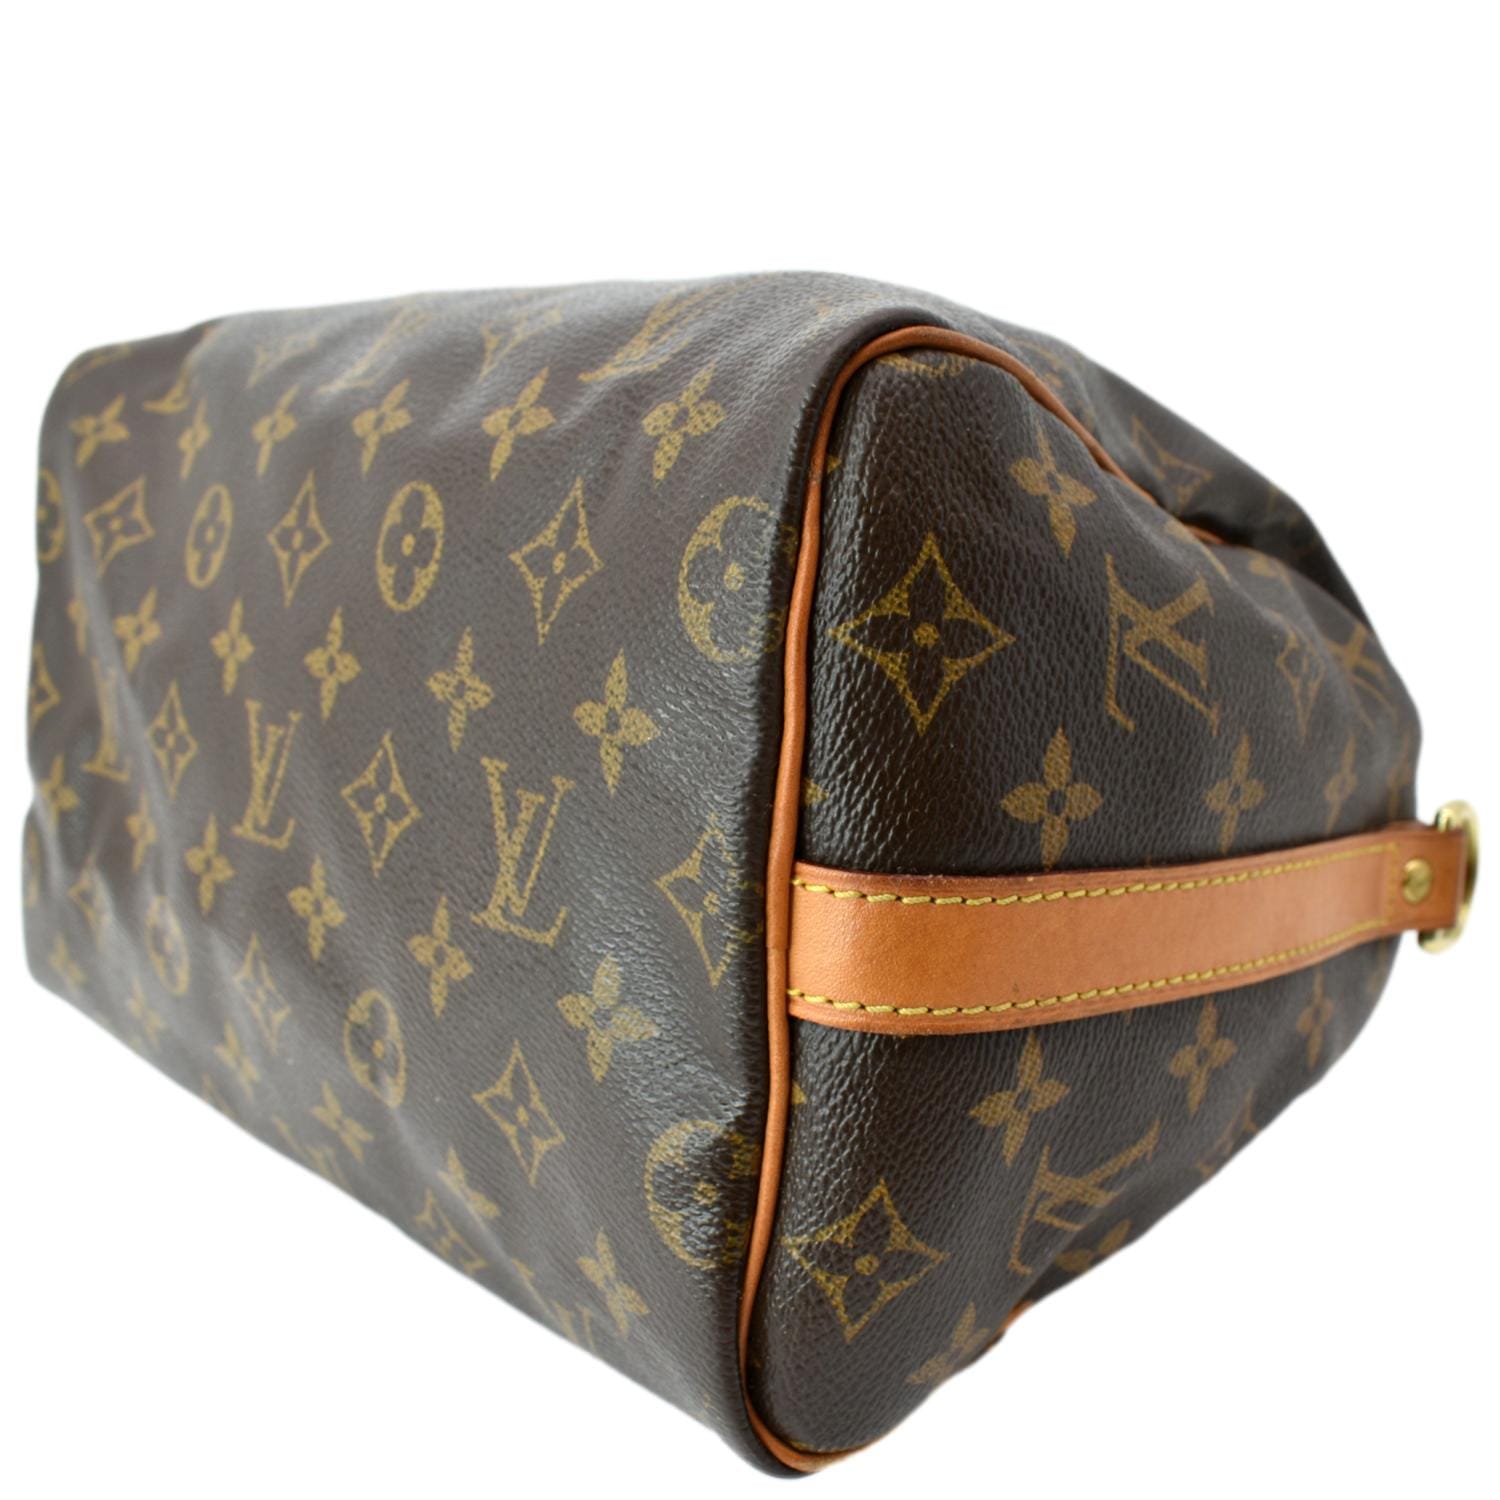 Preloved,thrift, designer bags - Louis vuitton speedy